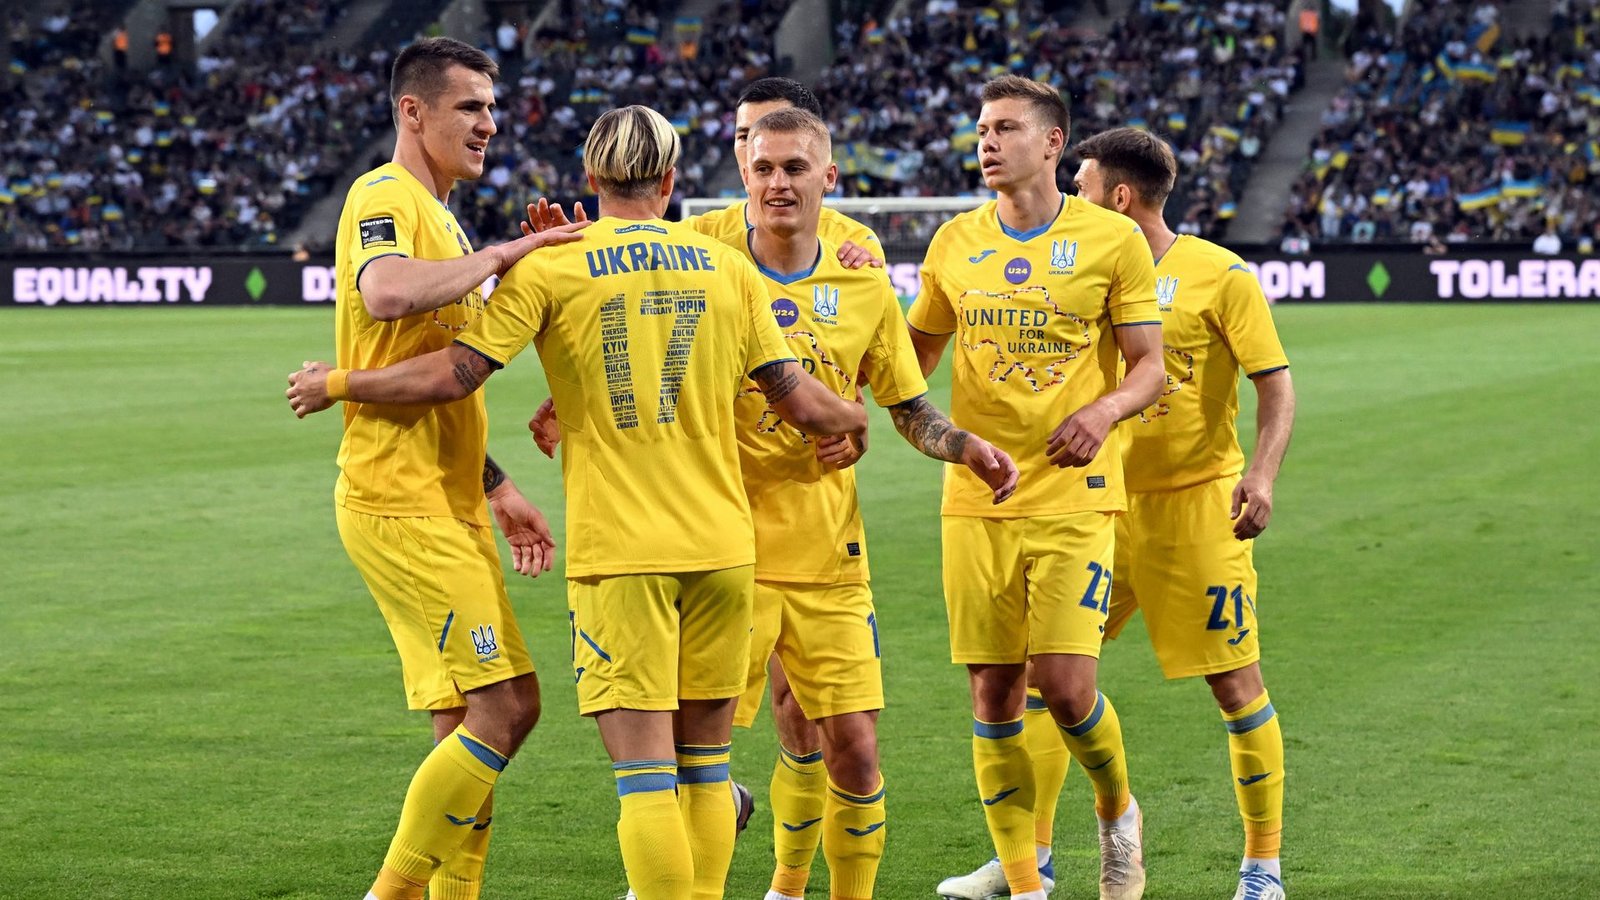 Die ukrainischen Spieler feiern das 1:0 gegen Borussia Mönchengladbach.Foto: Federico Gambarini/dpa